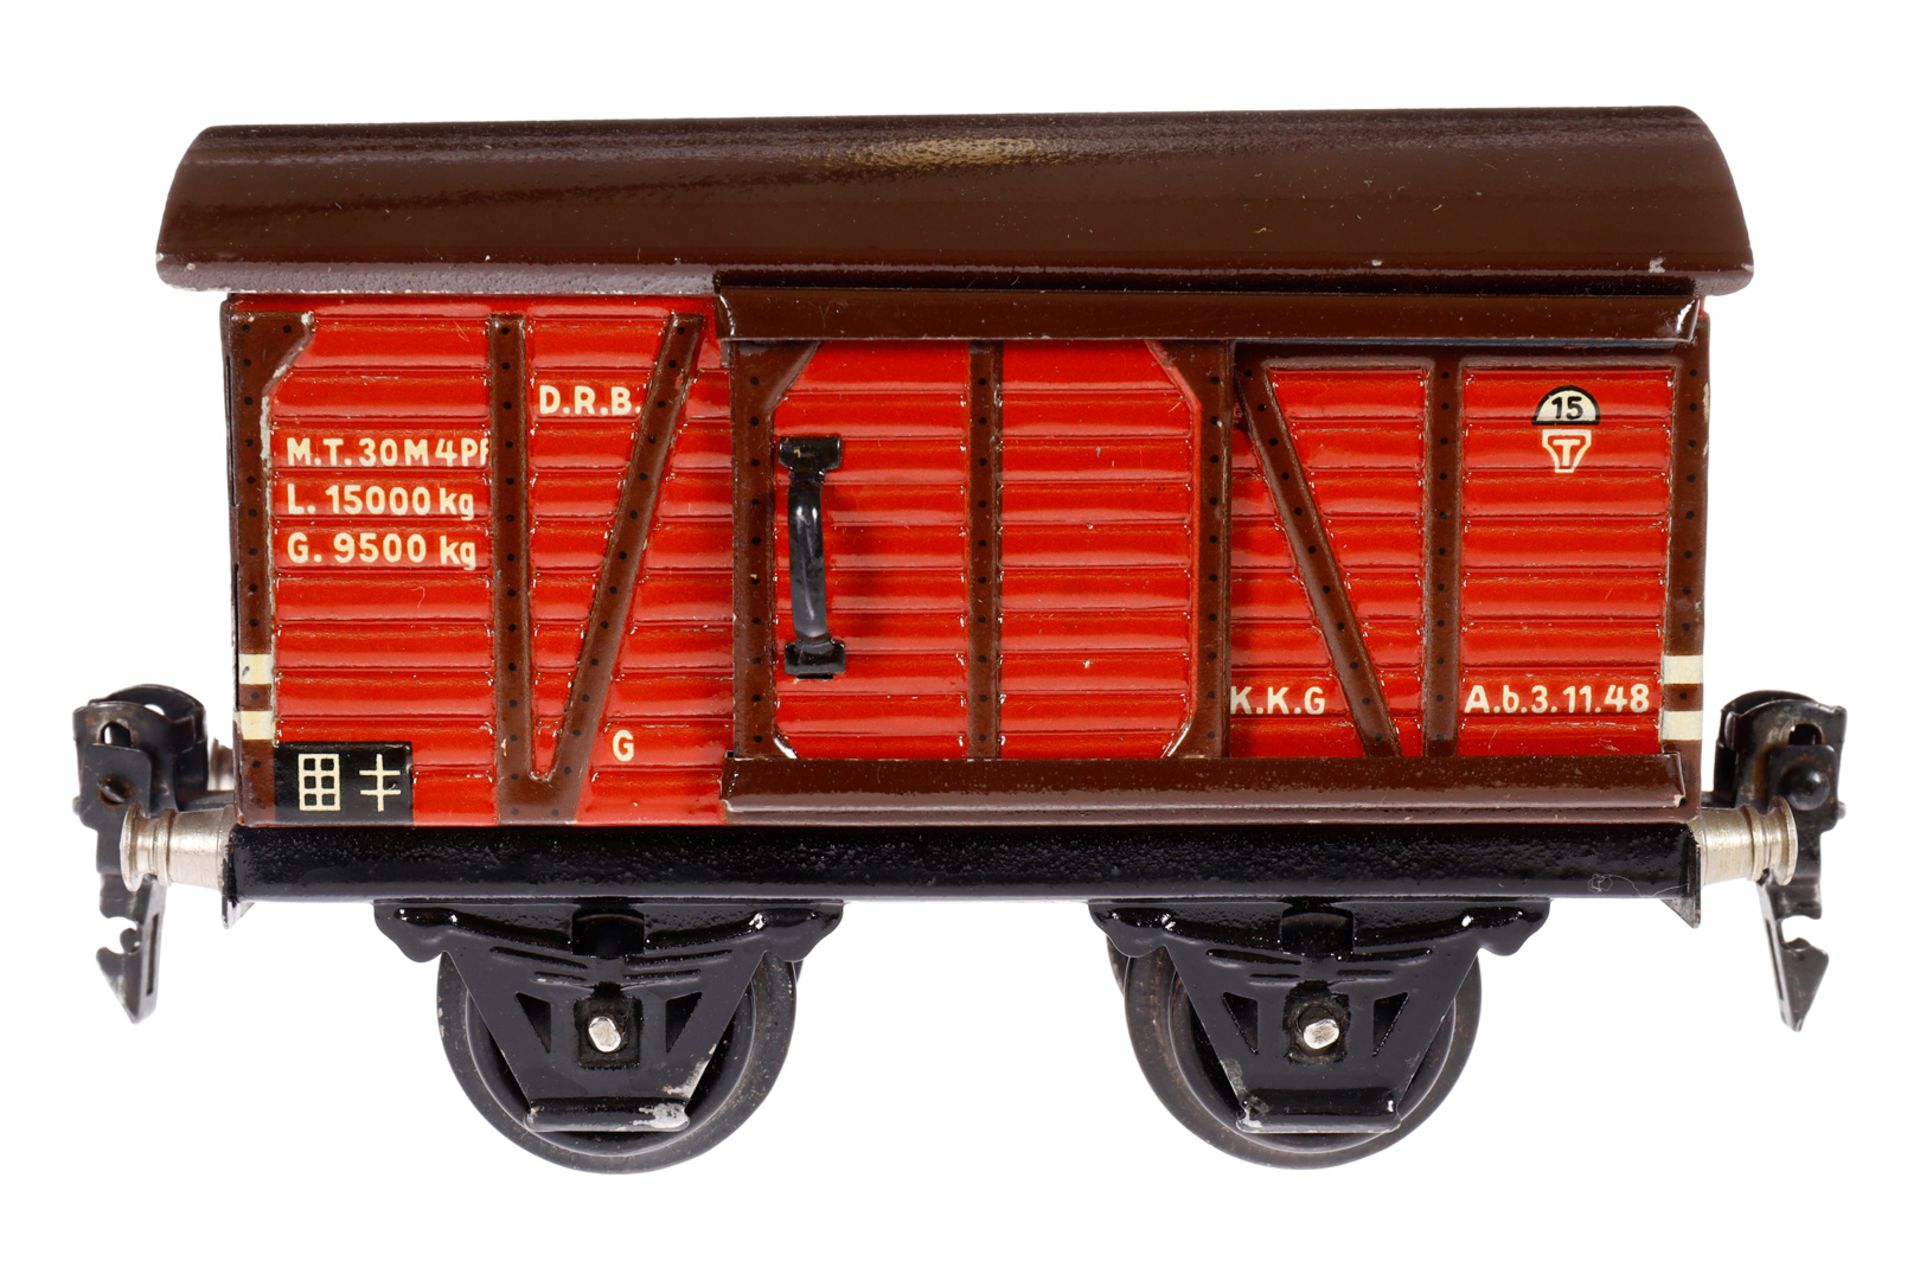 Märklin ged. Güterwagen 1681, Spur 0, CL, mit 1 ST, LS und gealterter Lack, L 13, im OK, Z 1-2